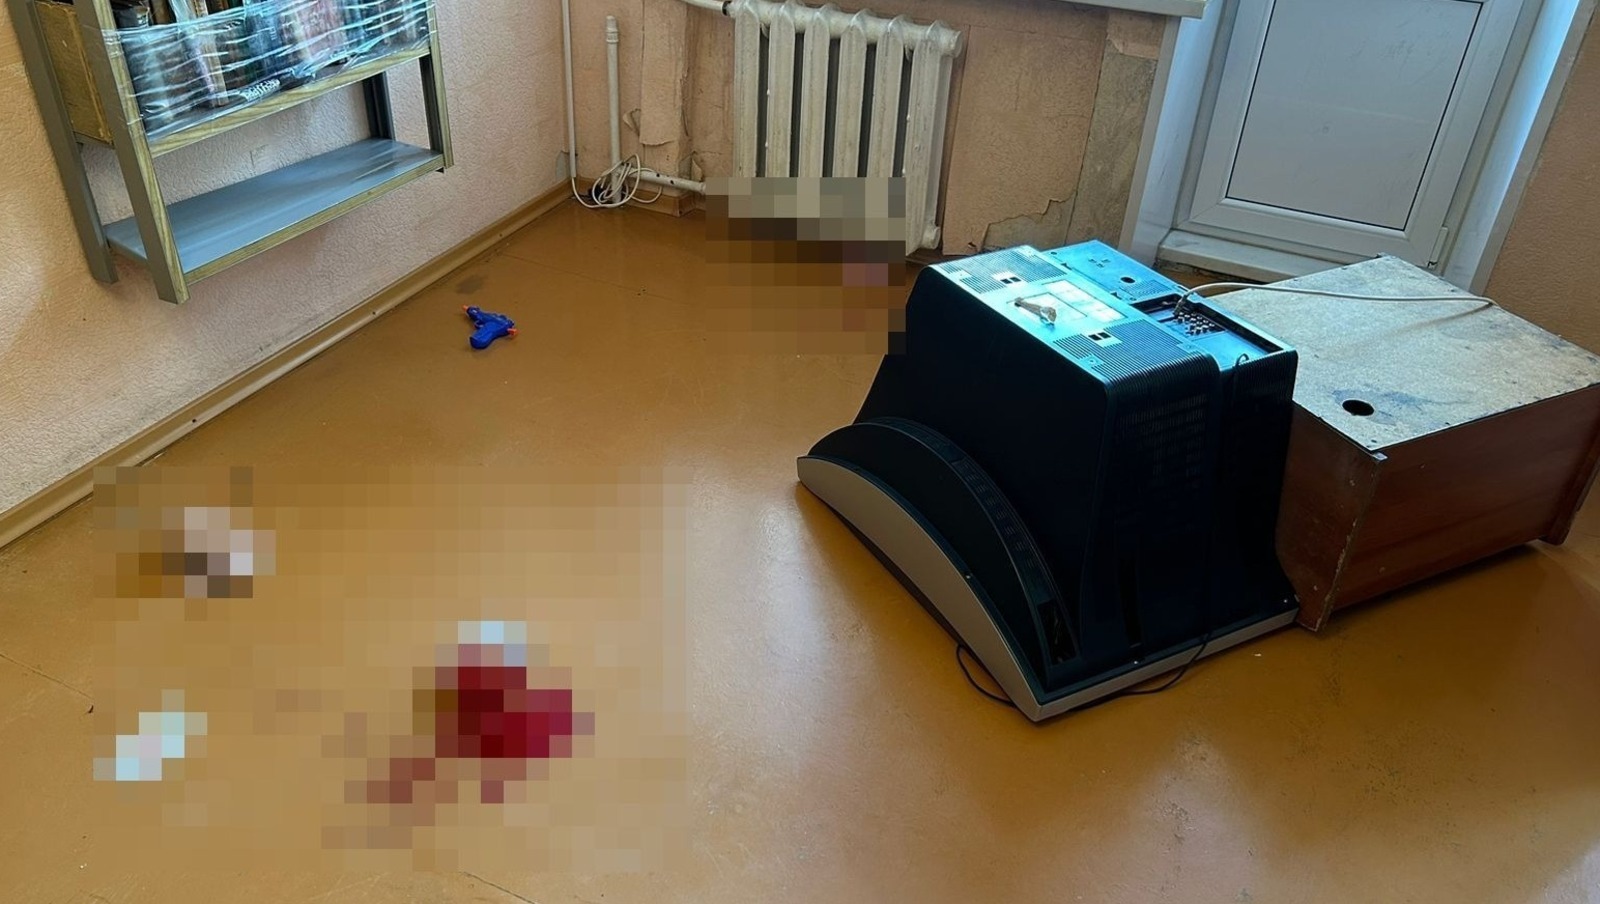 В Башкирии малыша убило телевизором: что известно о няне, которая смотрела за детьми на съемной квартире